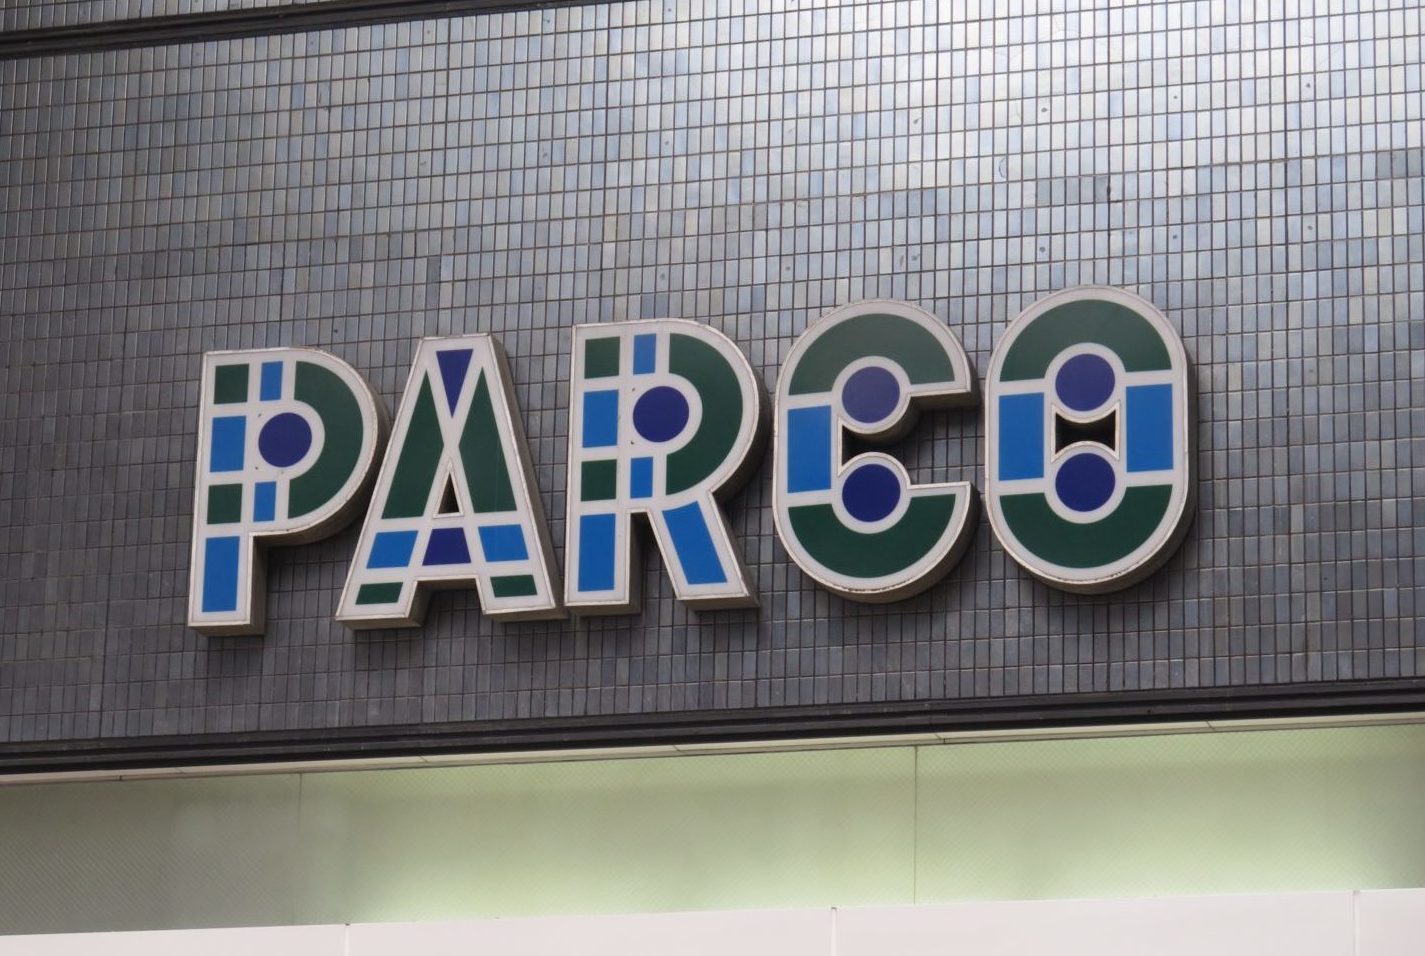 熊本パルコが2020年2月に営業終了を発表